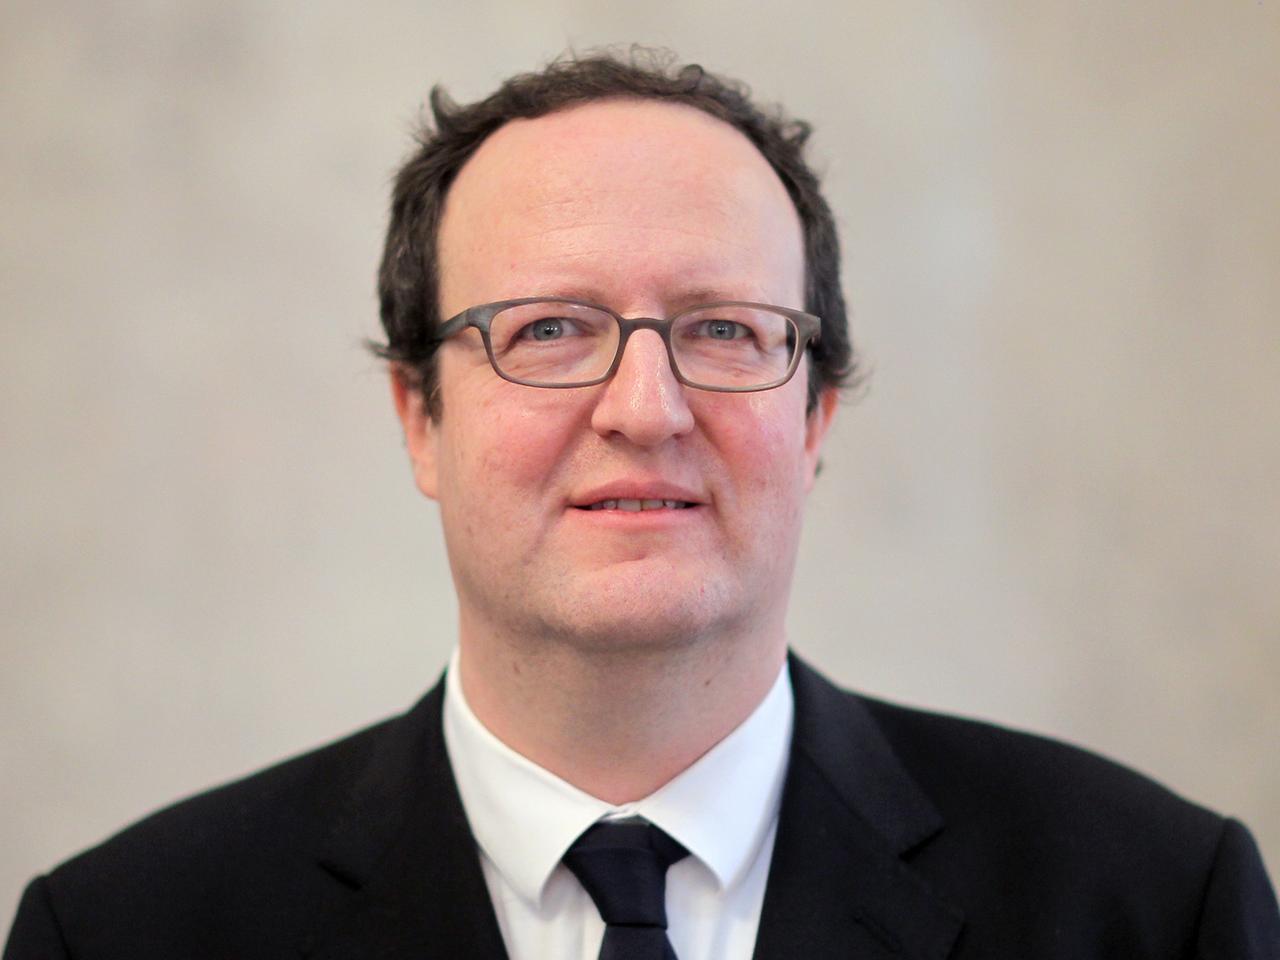 Portraitbild des Direktors des Fritz-Bauer-Instituts, Raphael Gross.